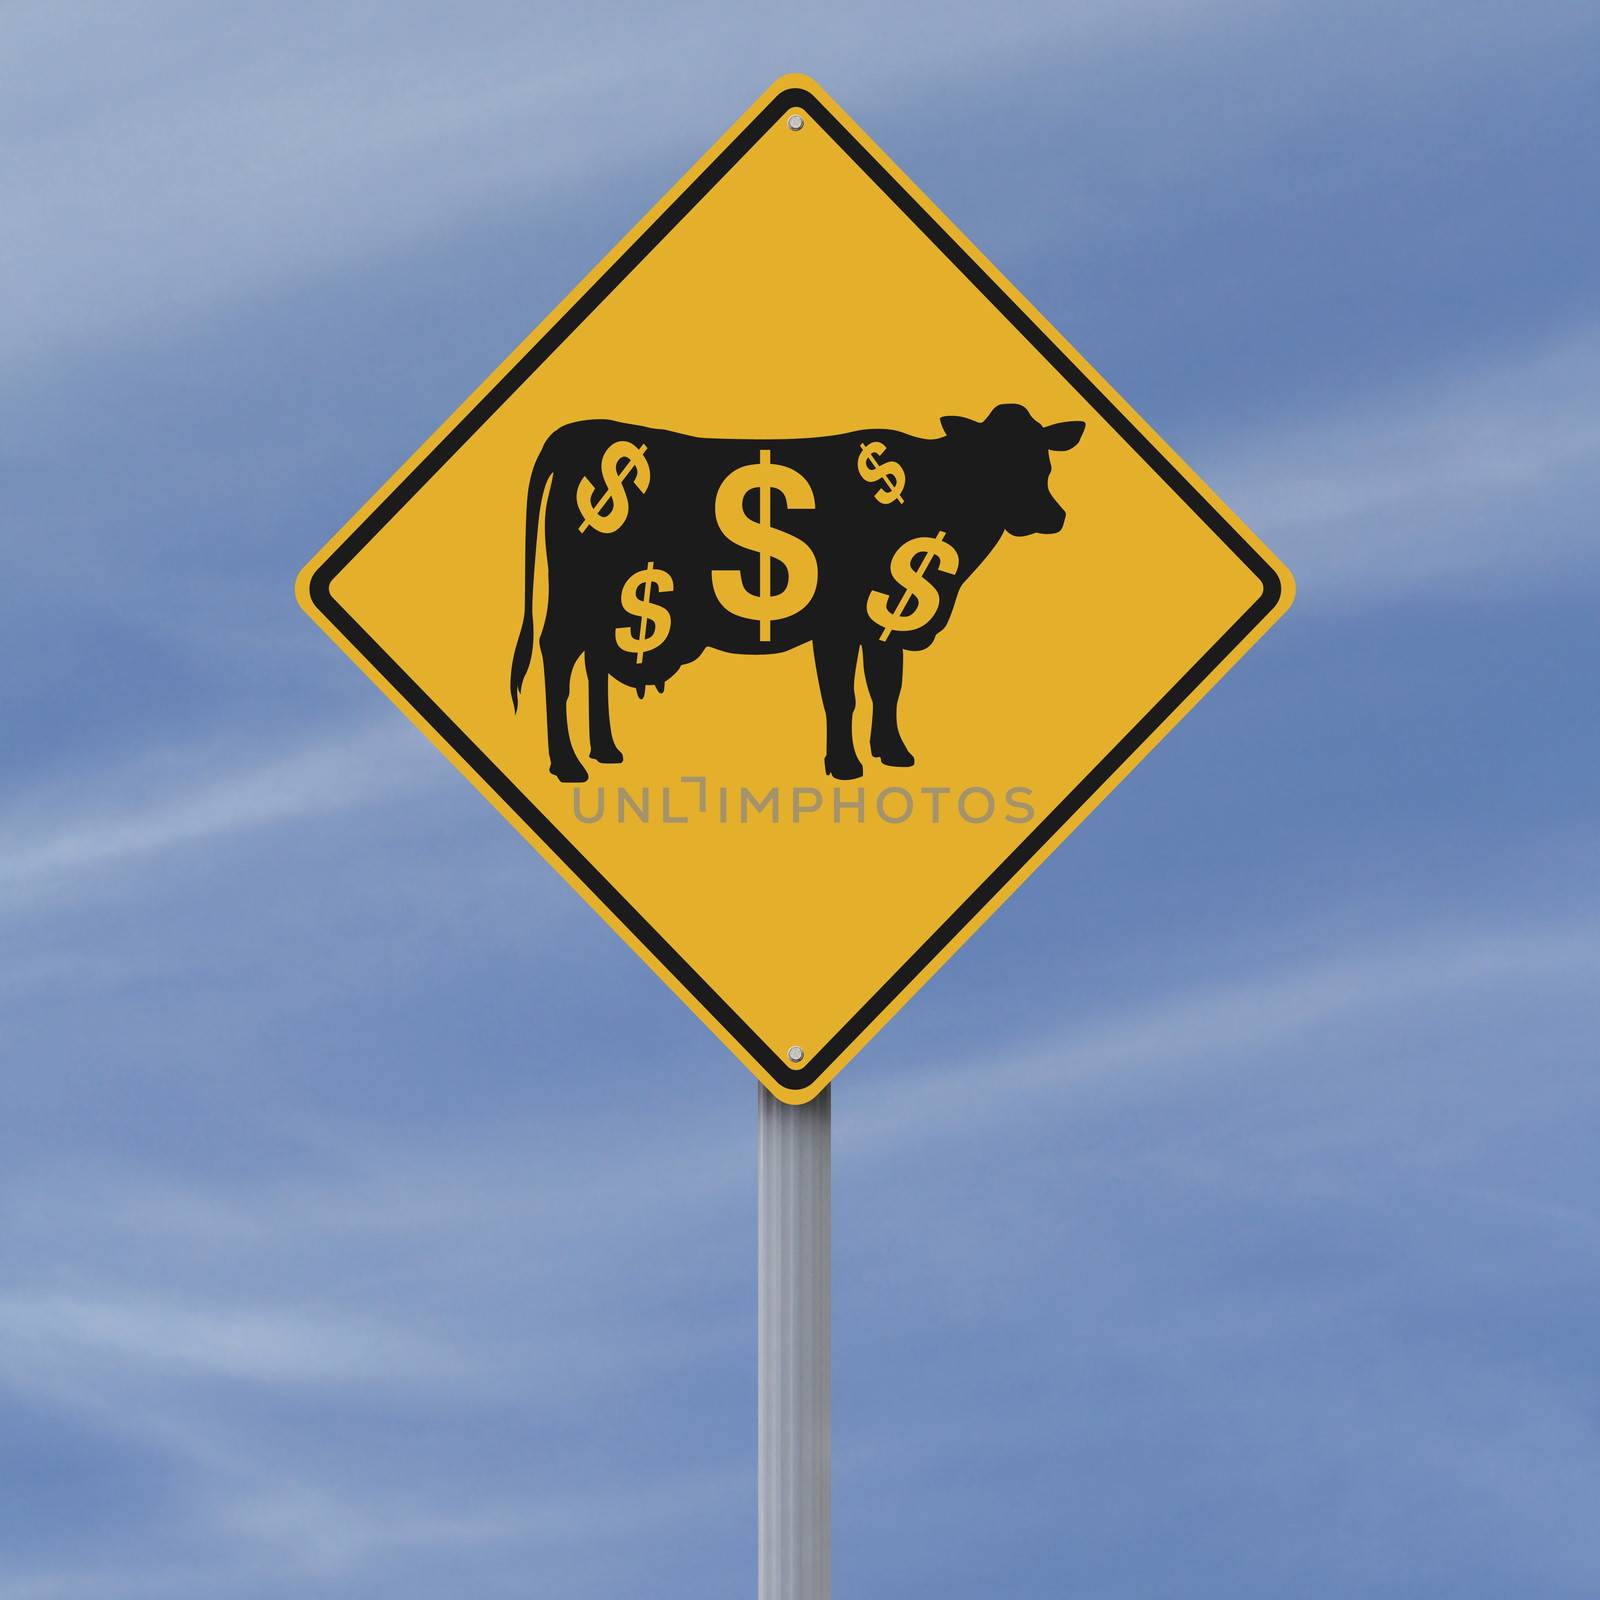 A conceptual road sign indicating a cash cow ahead